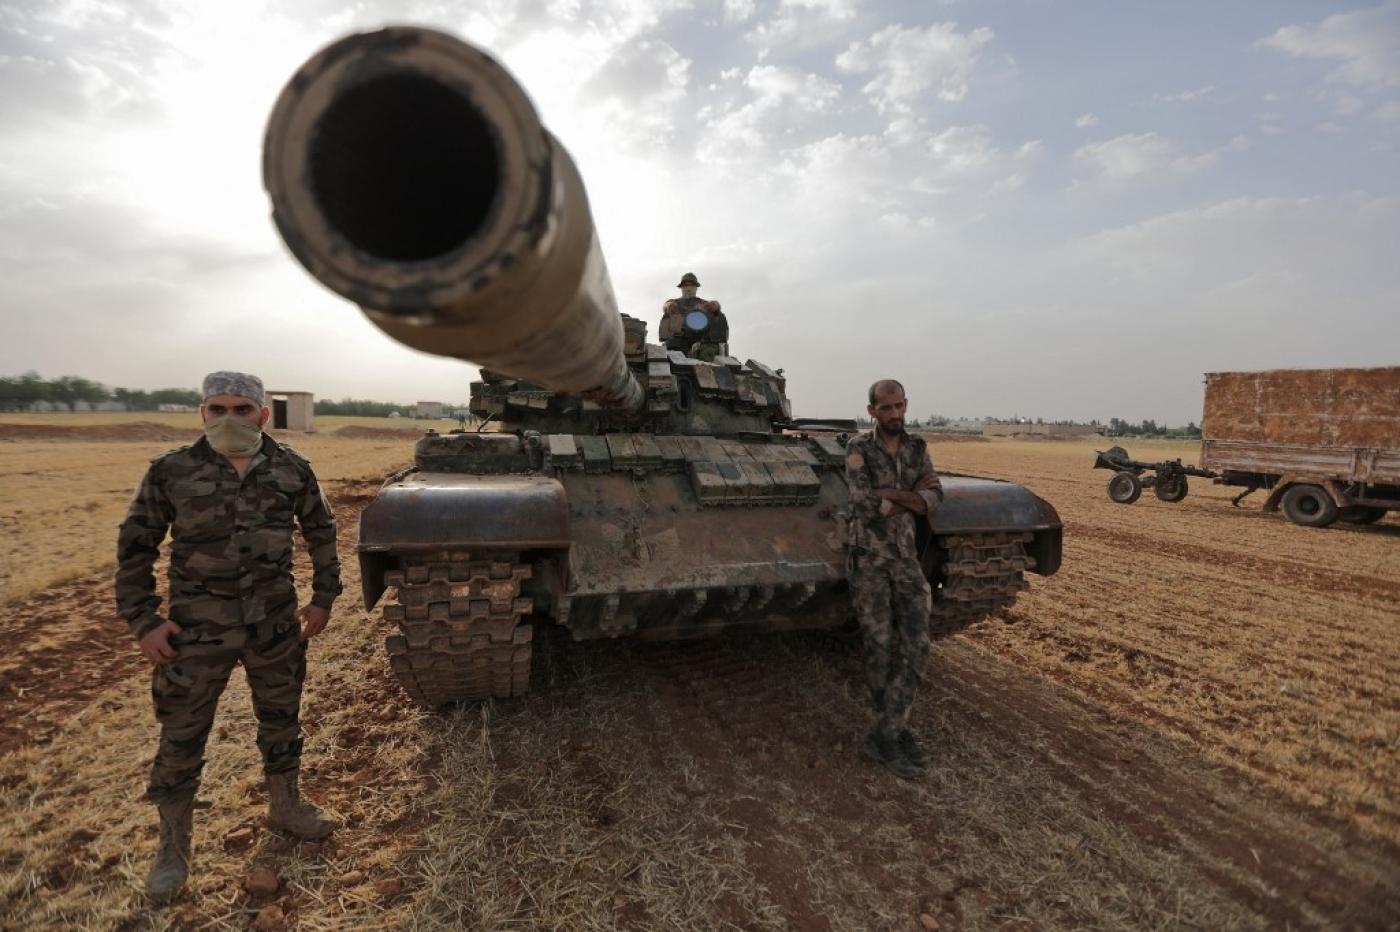  Des combattants syriens, soutenus par la Turquie, autour d’un char lors d’un exercice militaire dans la campagne de Manbij, en Syrie, le 2 juin 2022 (AFP)